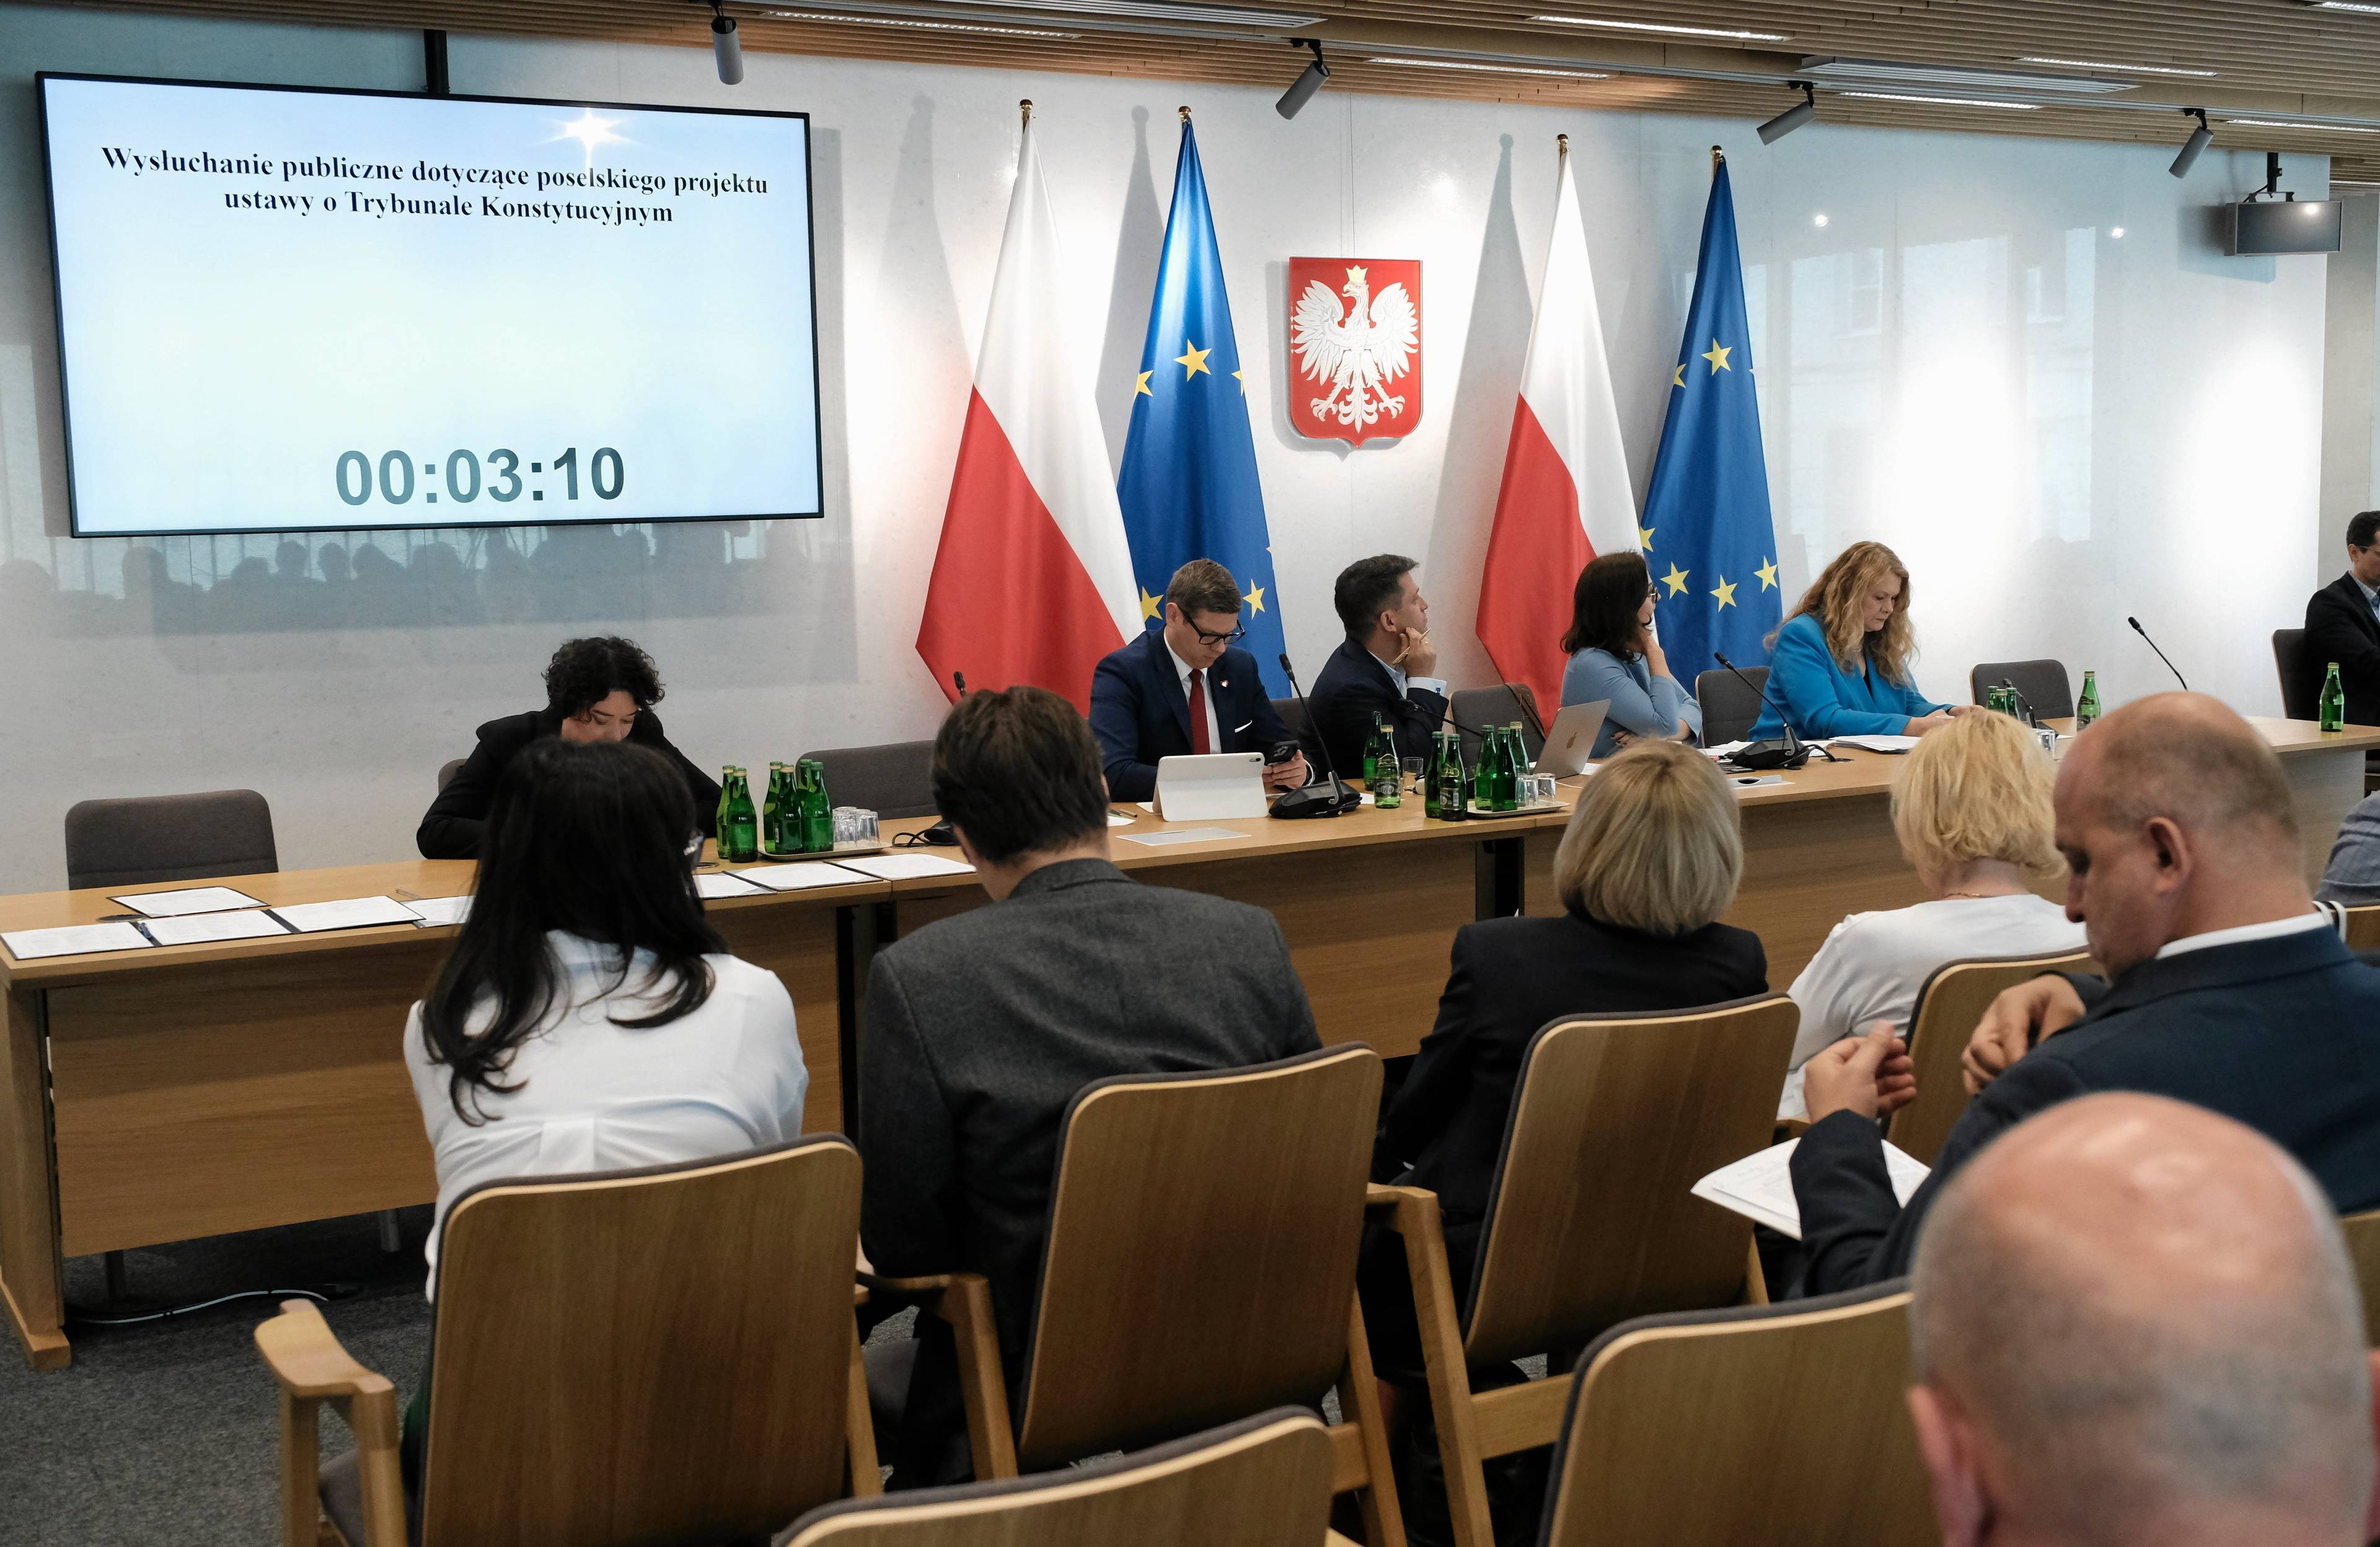 Posłowie za długim stołem na posiedzeniu sejmowej komisji, za nimi polskie godło, flaga oraz flaga Unii Europejskiej